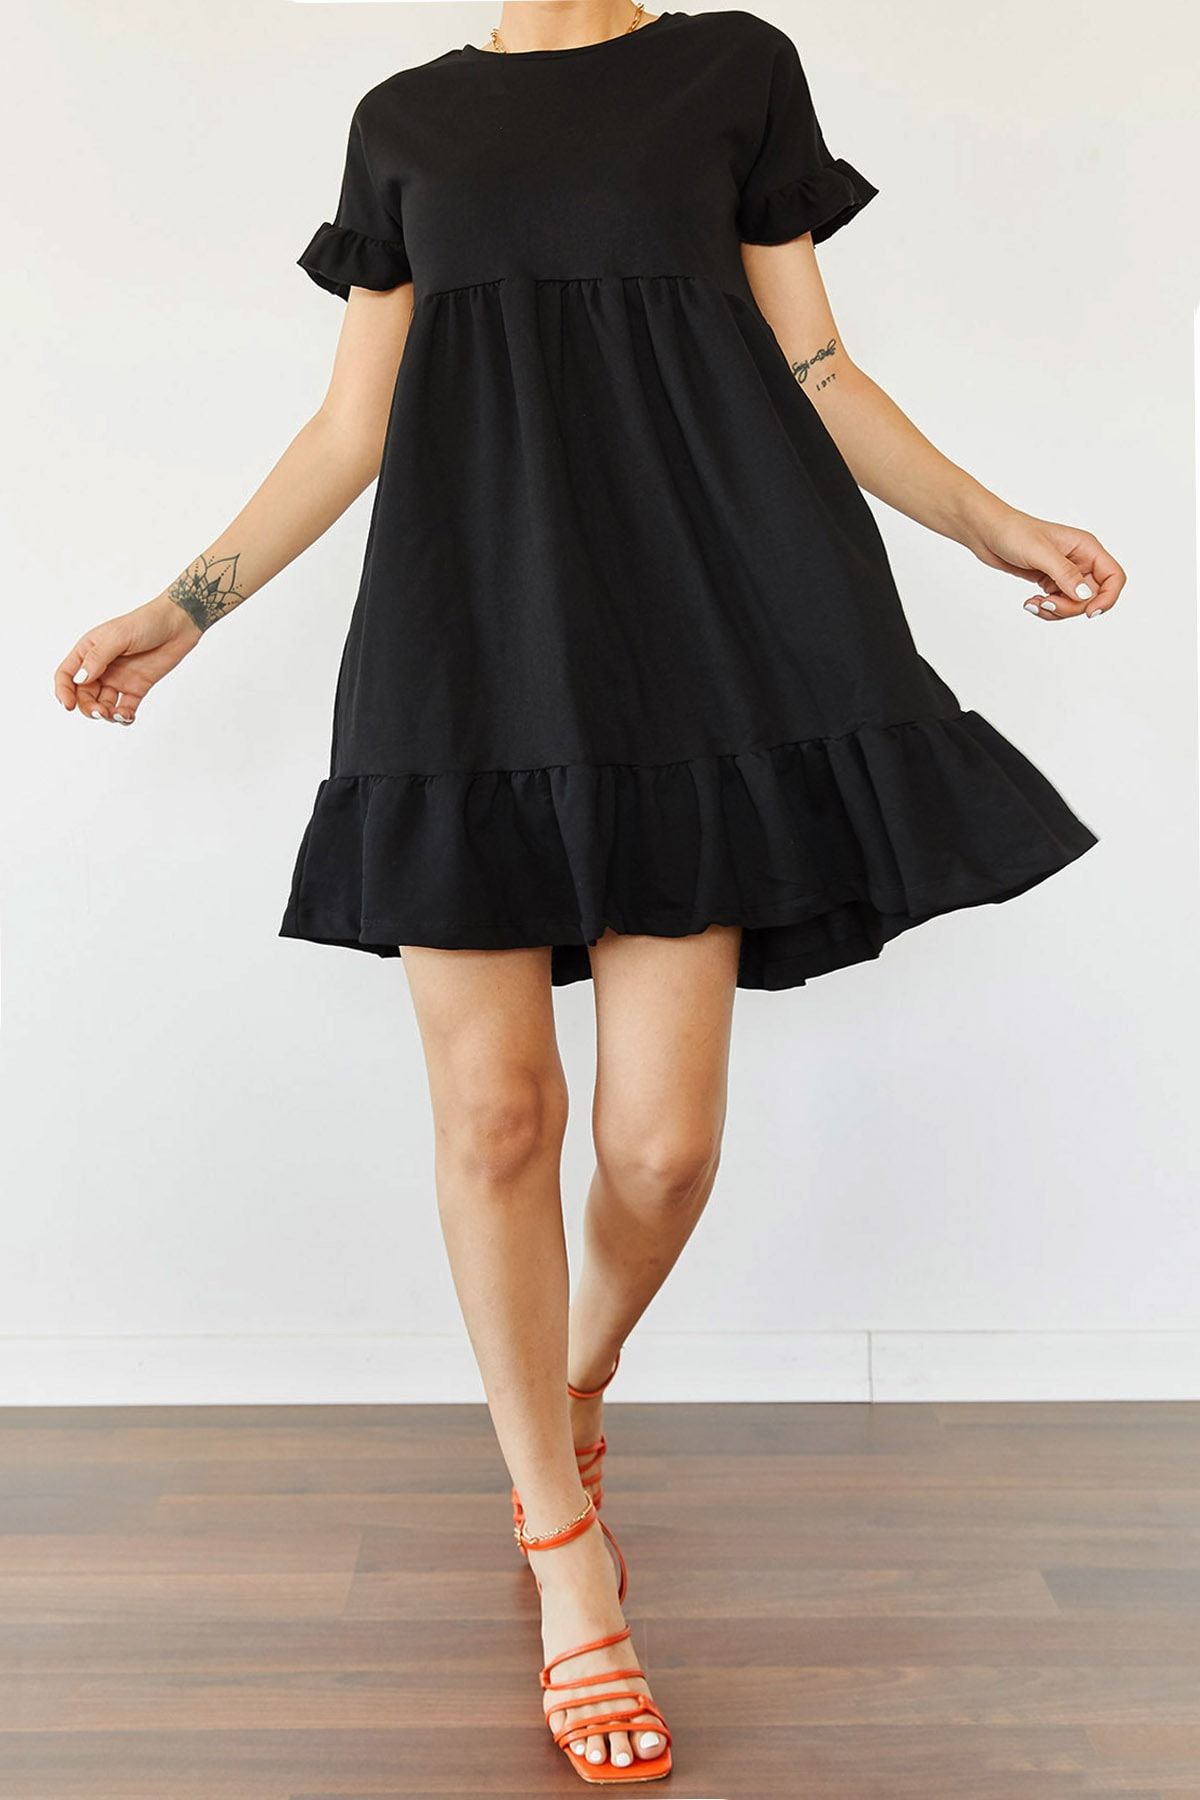 XHAN Kadın Siyah Etek & Kol Ucu Fırfırlı Elbise 0YZK6-10288